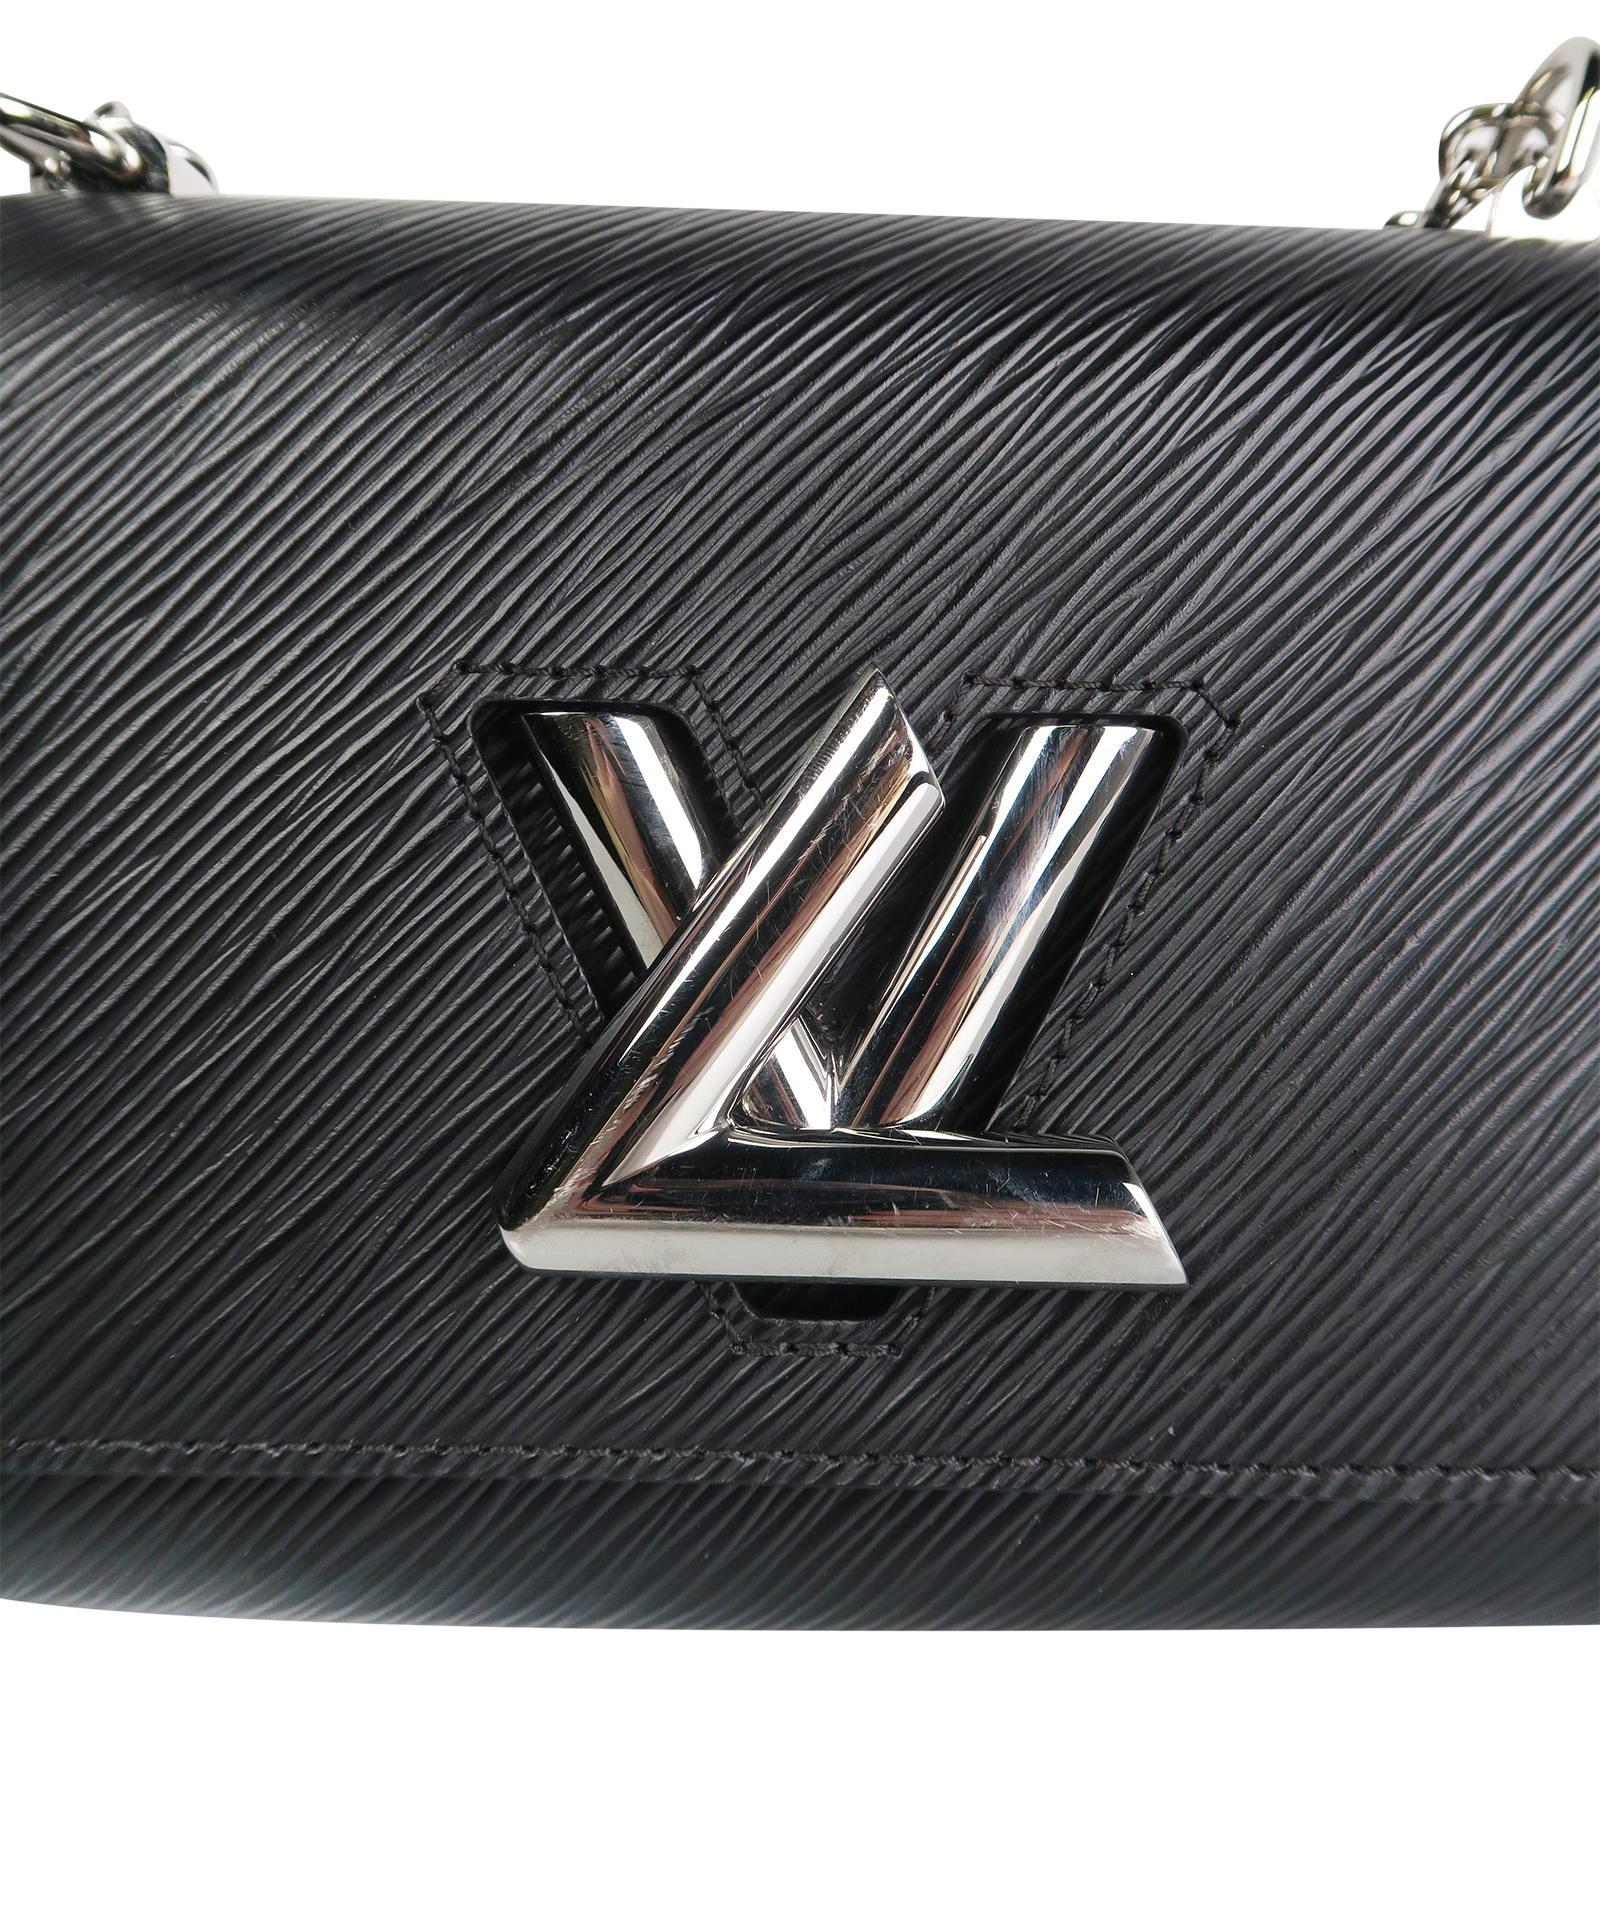 Louis Vuitton Twist PM – The Luxury Exchange PDX